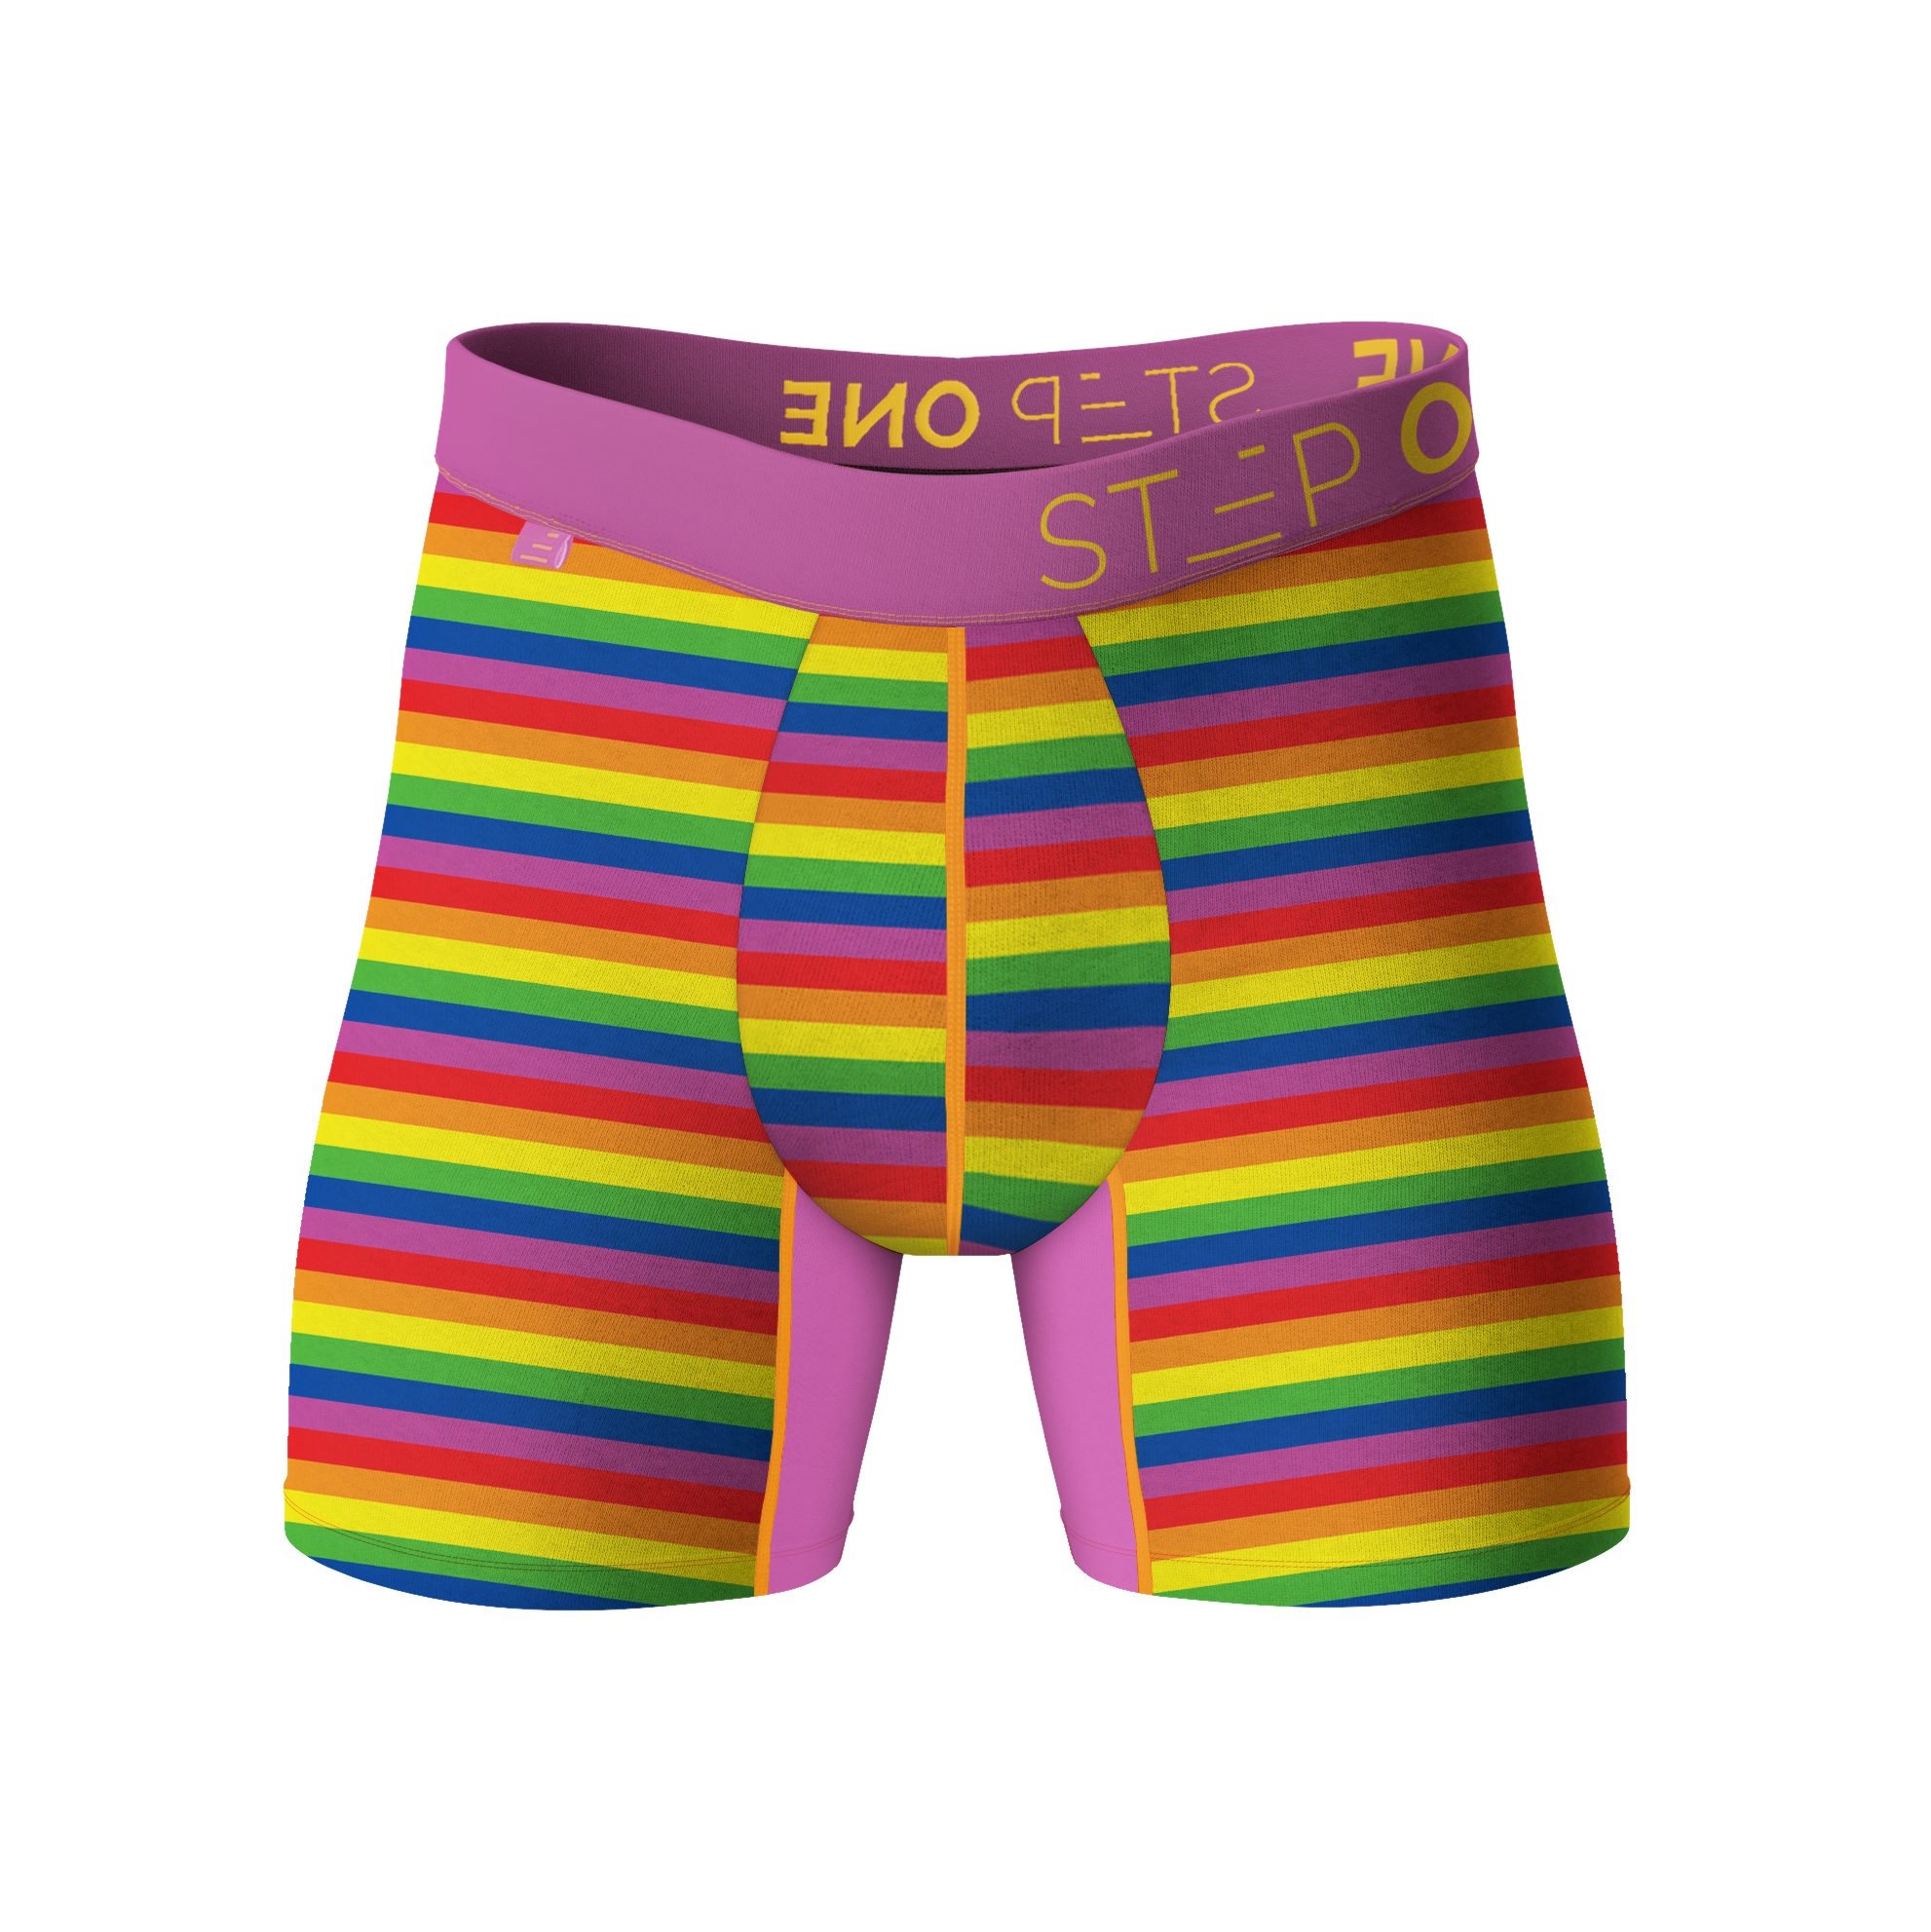 Boxer Brief - Hibiscus  Step One Men's Underwear US